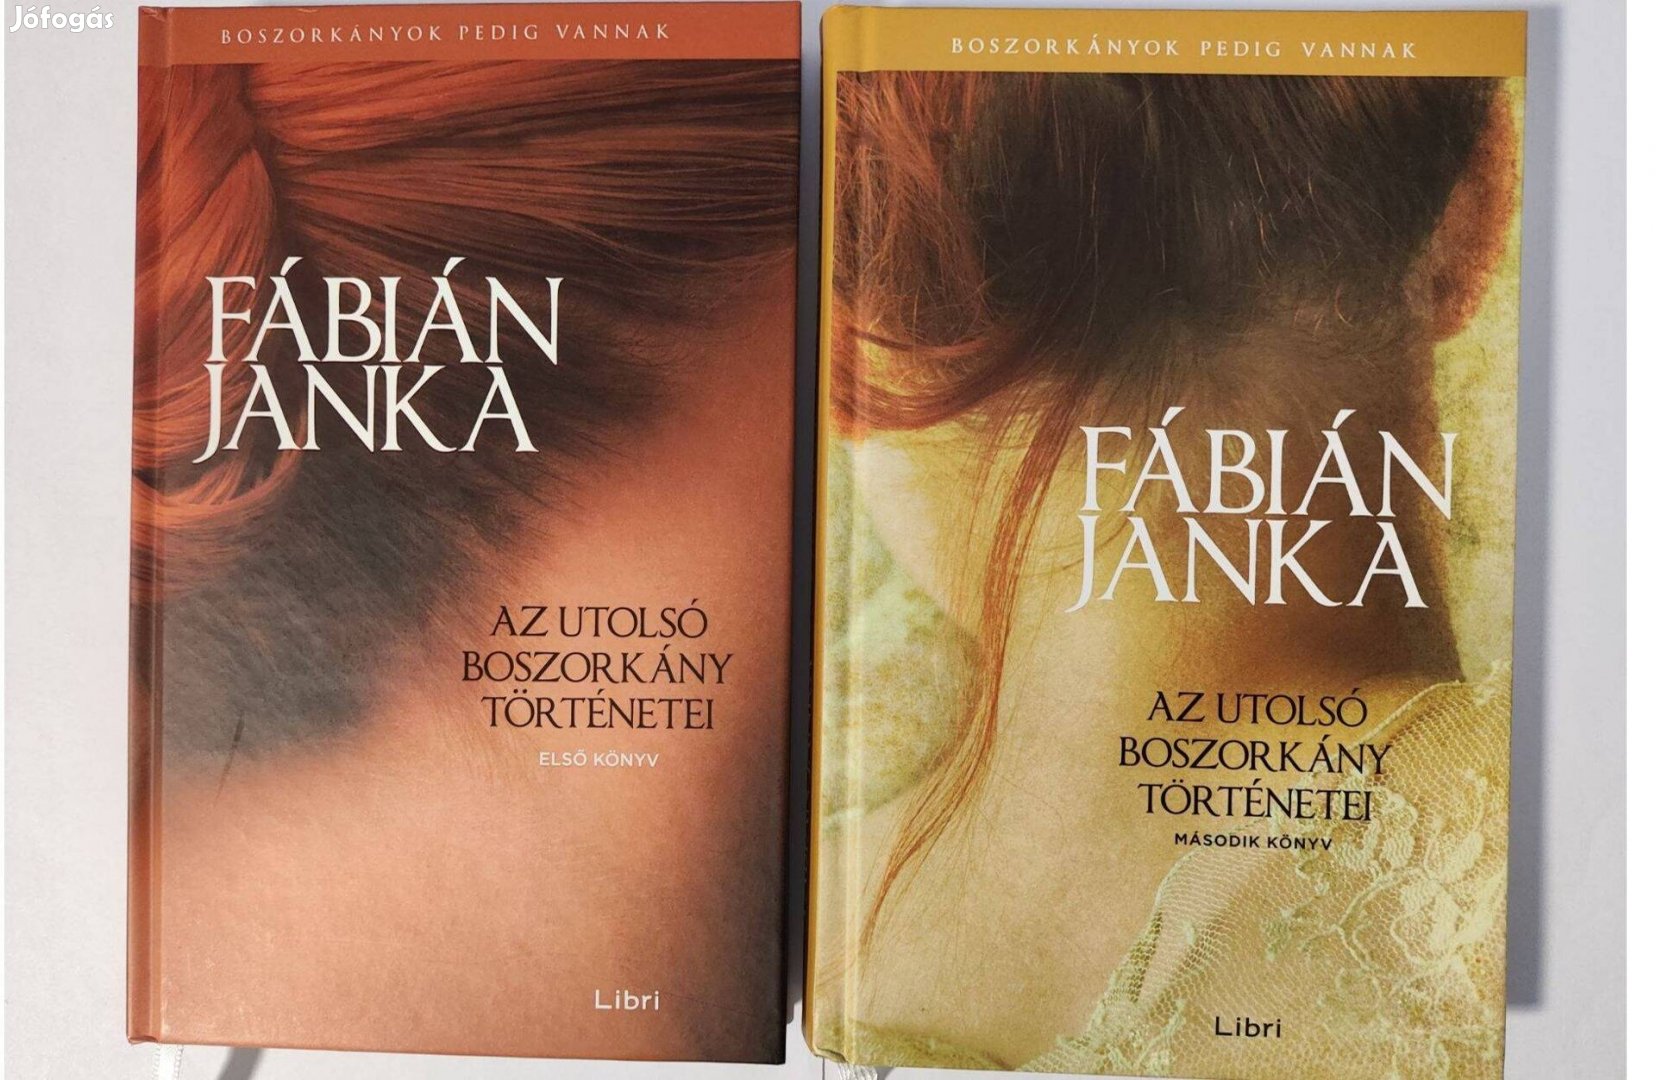 Fábián Janka könyvek